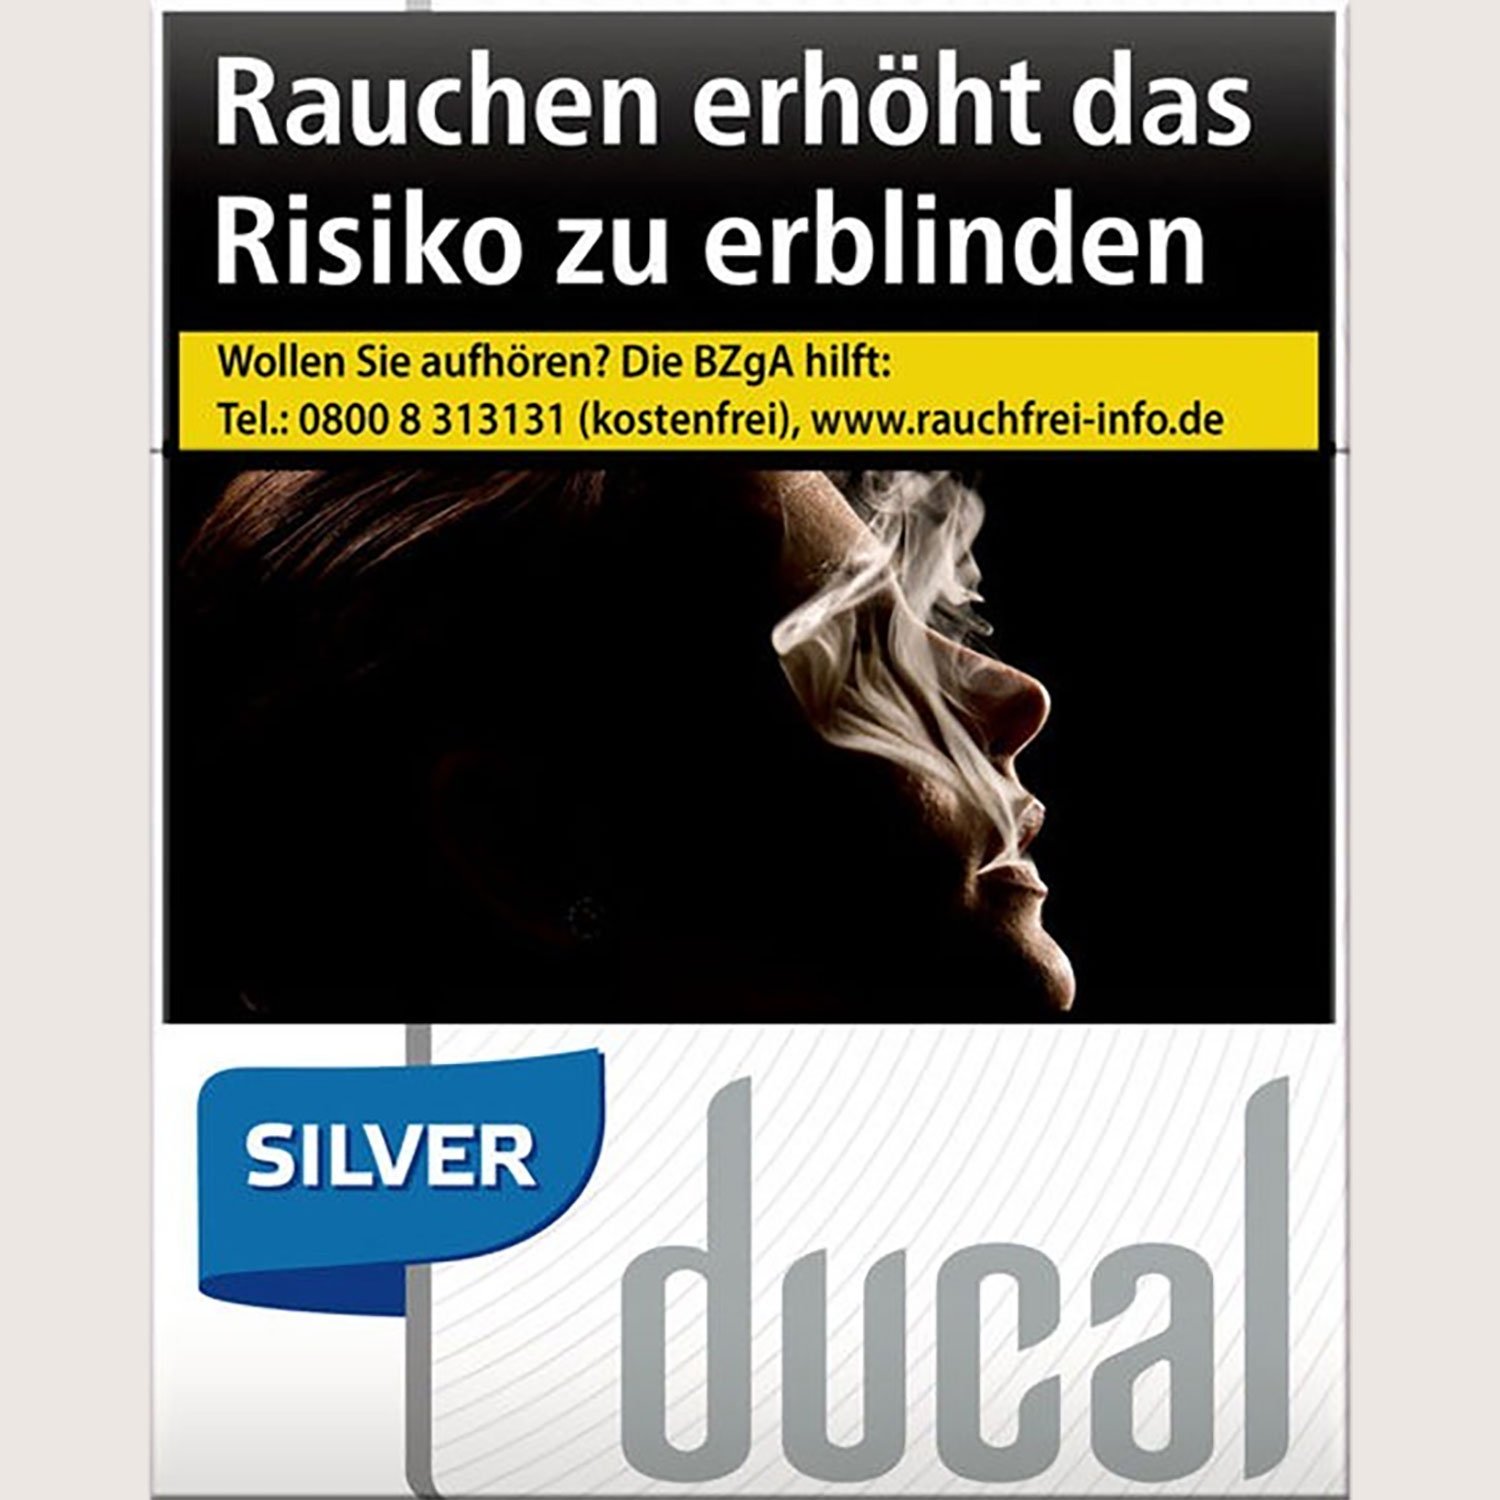 Ducal Silver 8,00 €